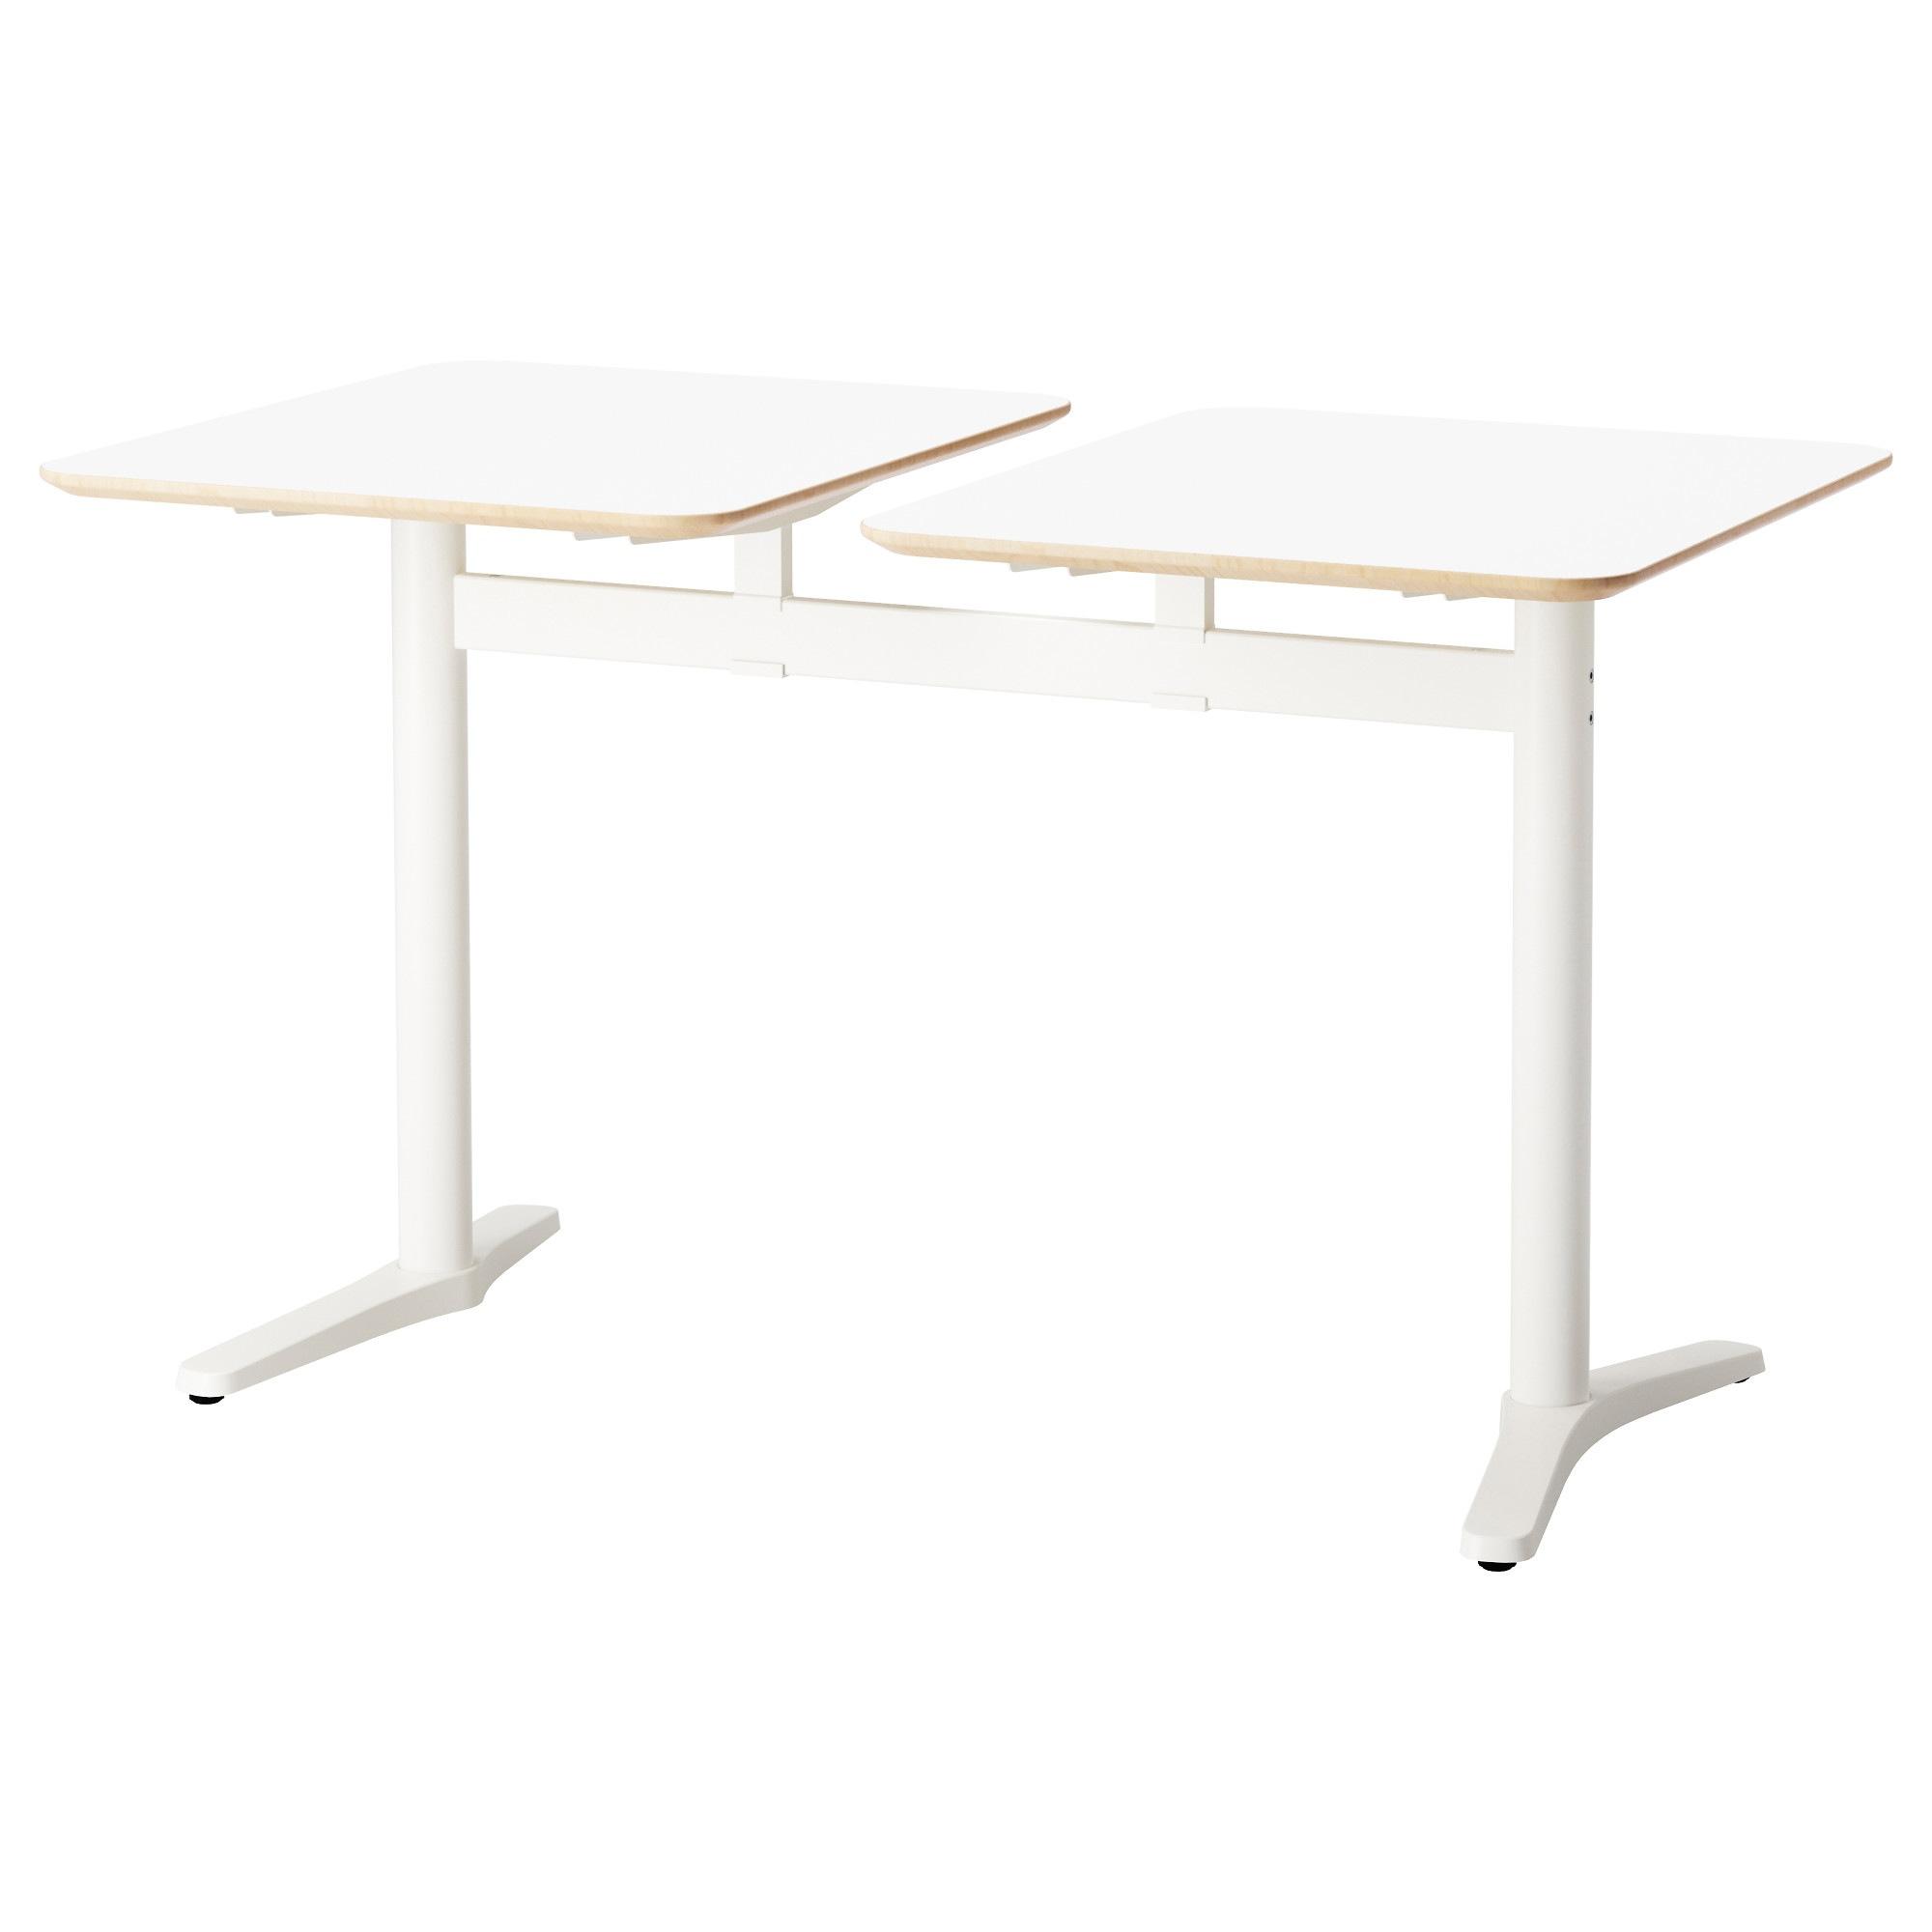 [ด่วน!! โปรโมชั่นมีจำนวนจำกัด]โต้ะทำงาน โต้ะคอม โต้ะเกมส์ โต้ะเขียนหนังสือ โต๊ะท็อปคู่, ขาว, ขาว ขนาด 130x70 ซม. โต๊ะคาเฟ่ BILLSTA ขนาด 130x70 ซม.